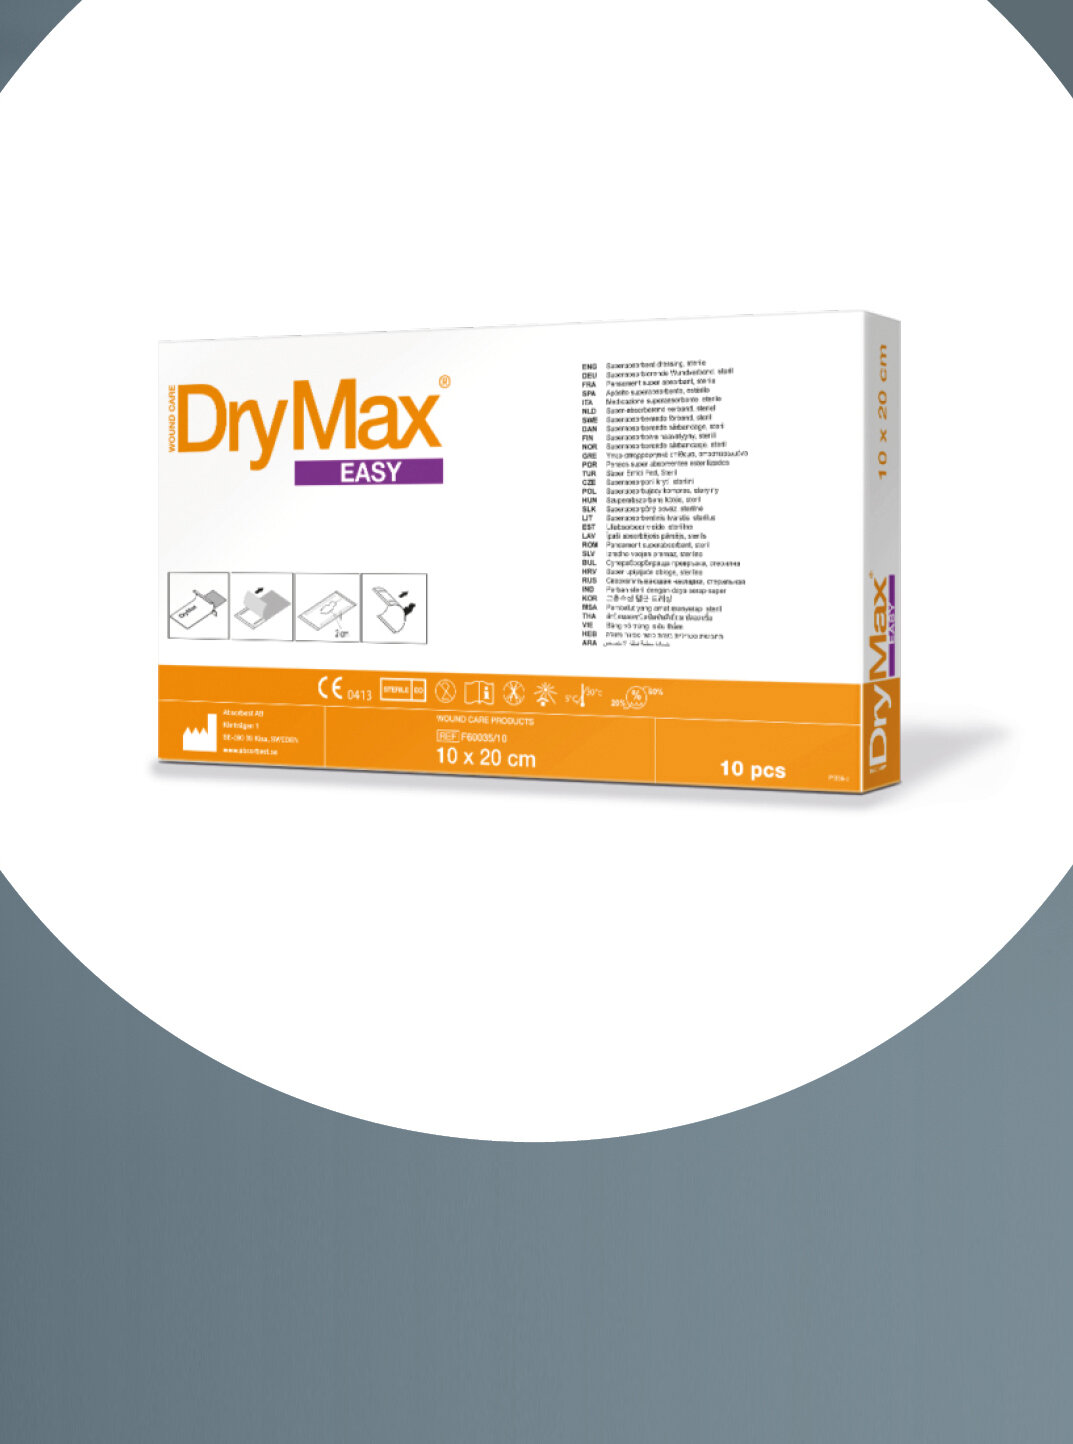 Im Fokus die Verpackung von mediset clinical products DryMax® Easy in der Größe 10 x 20 cm.